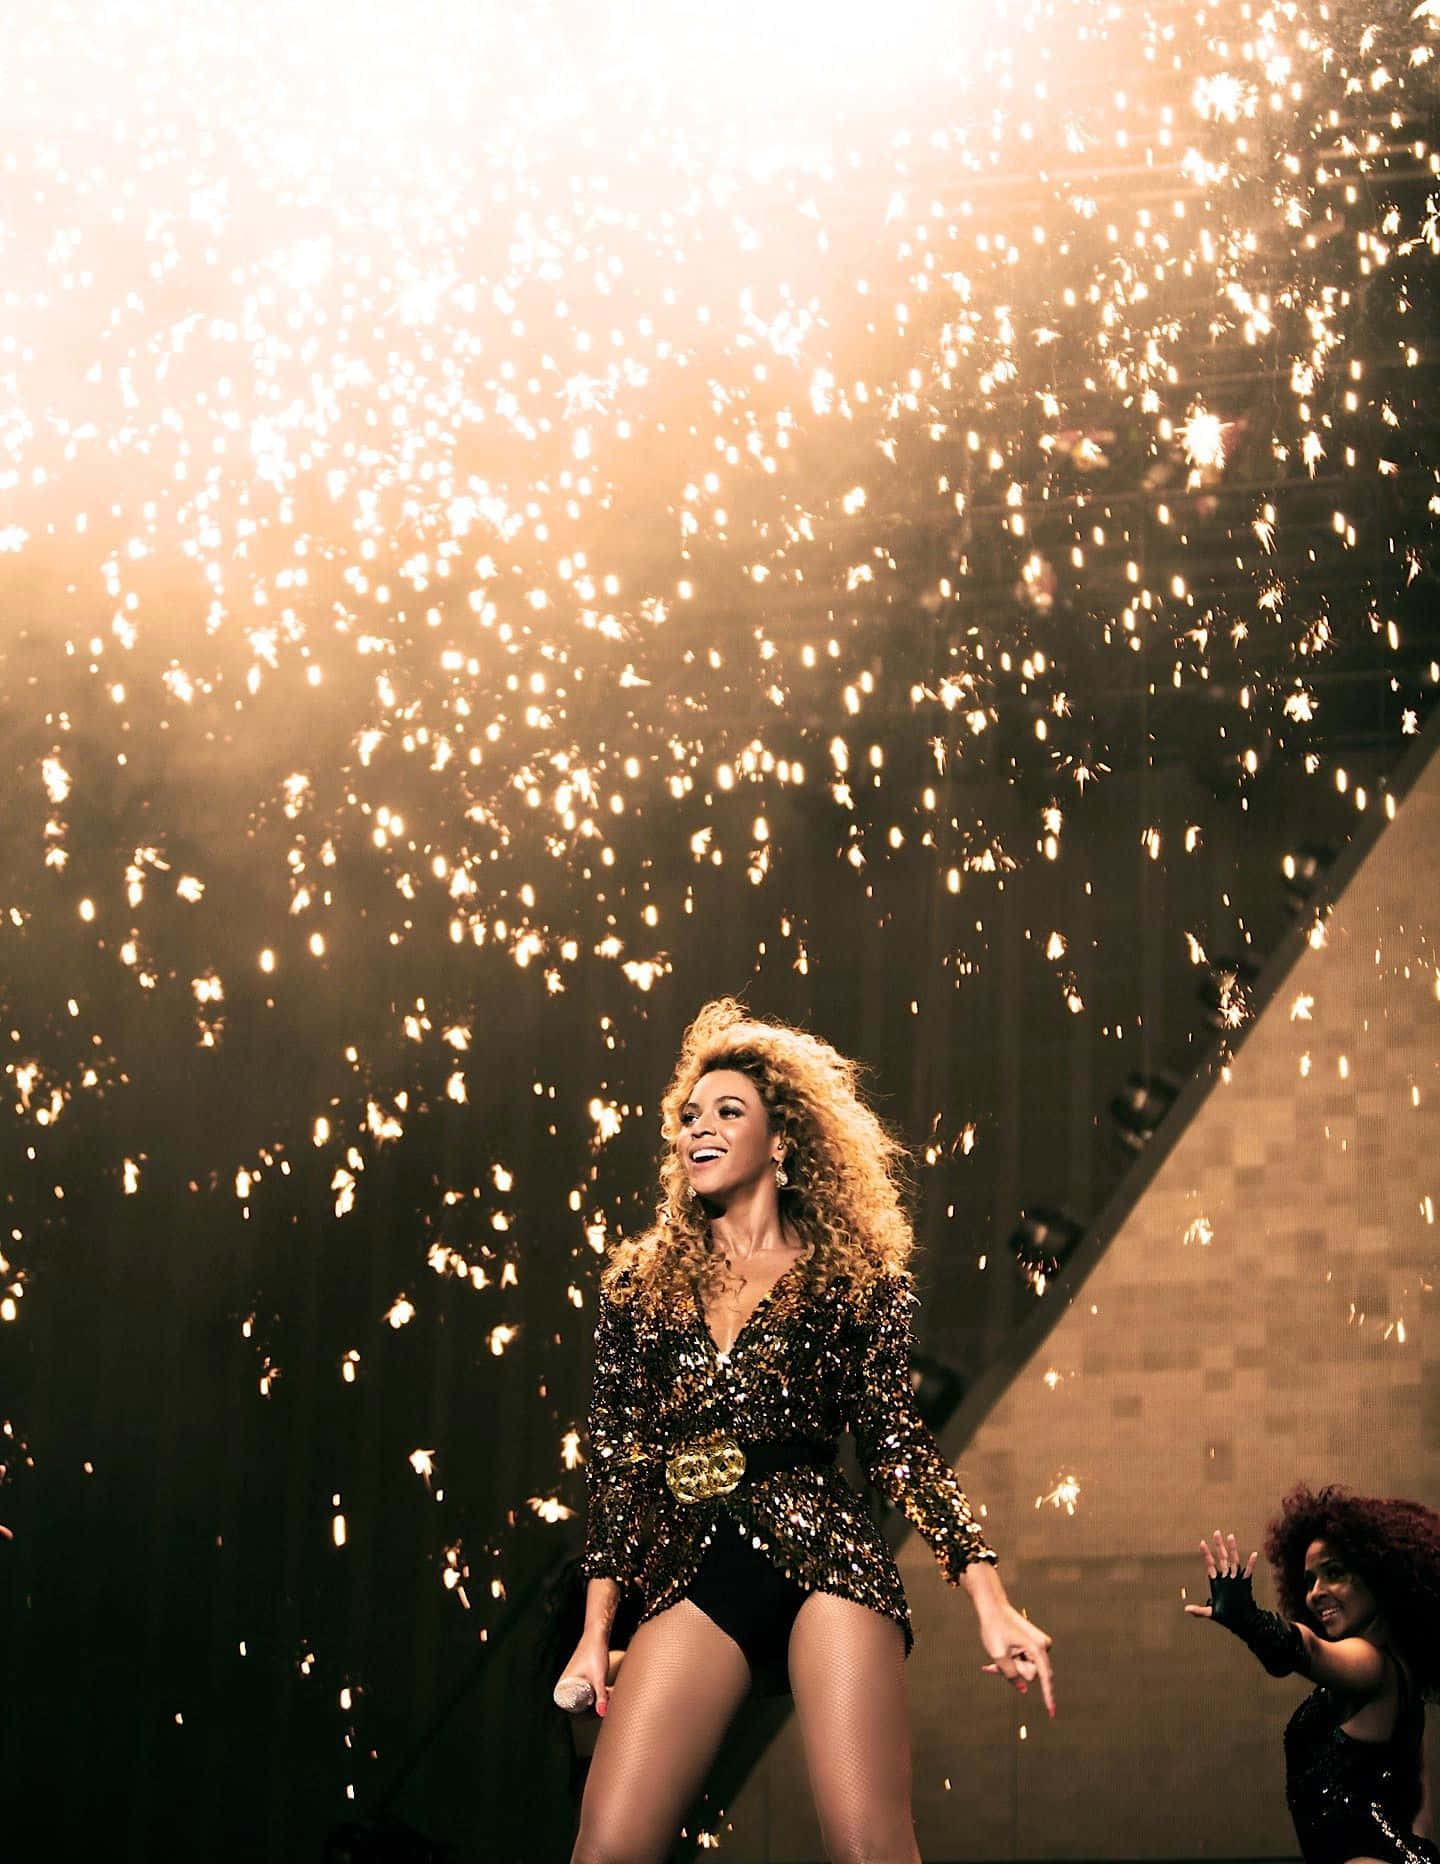 "The Queen Of Pop - Beyonce"